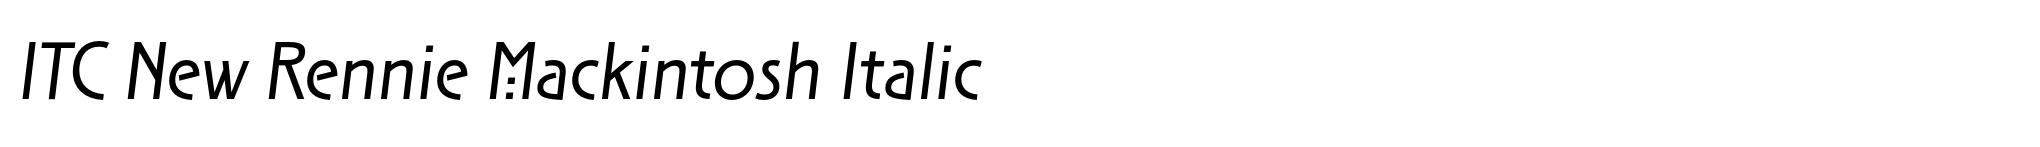 ITC New Rennie Mackintosh Italic image